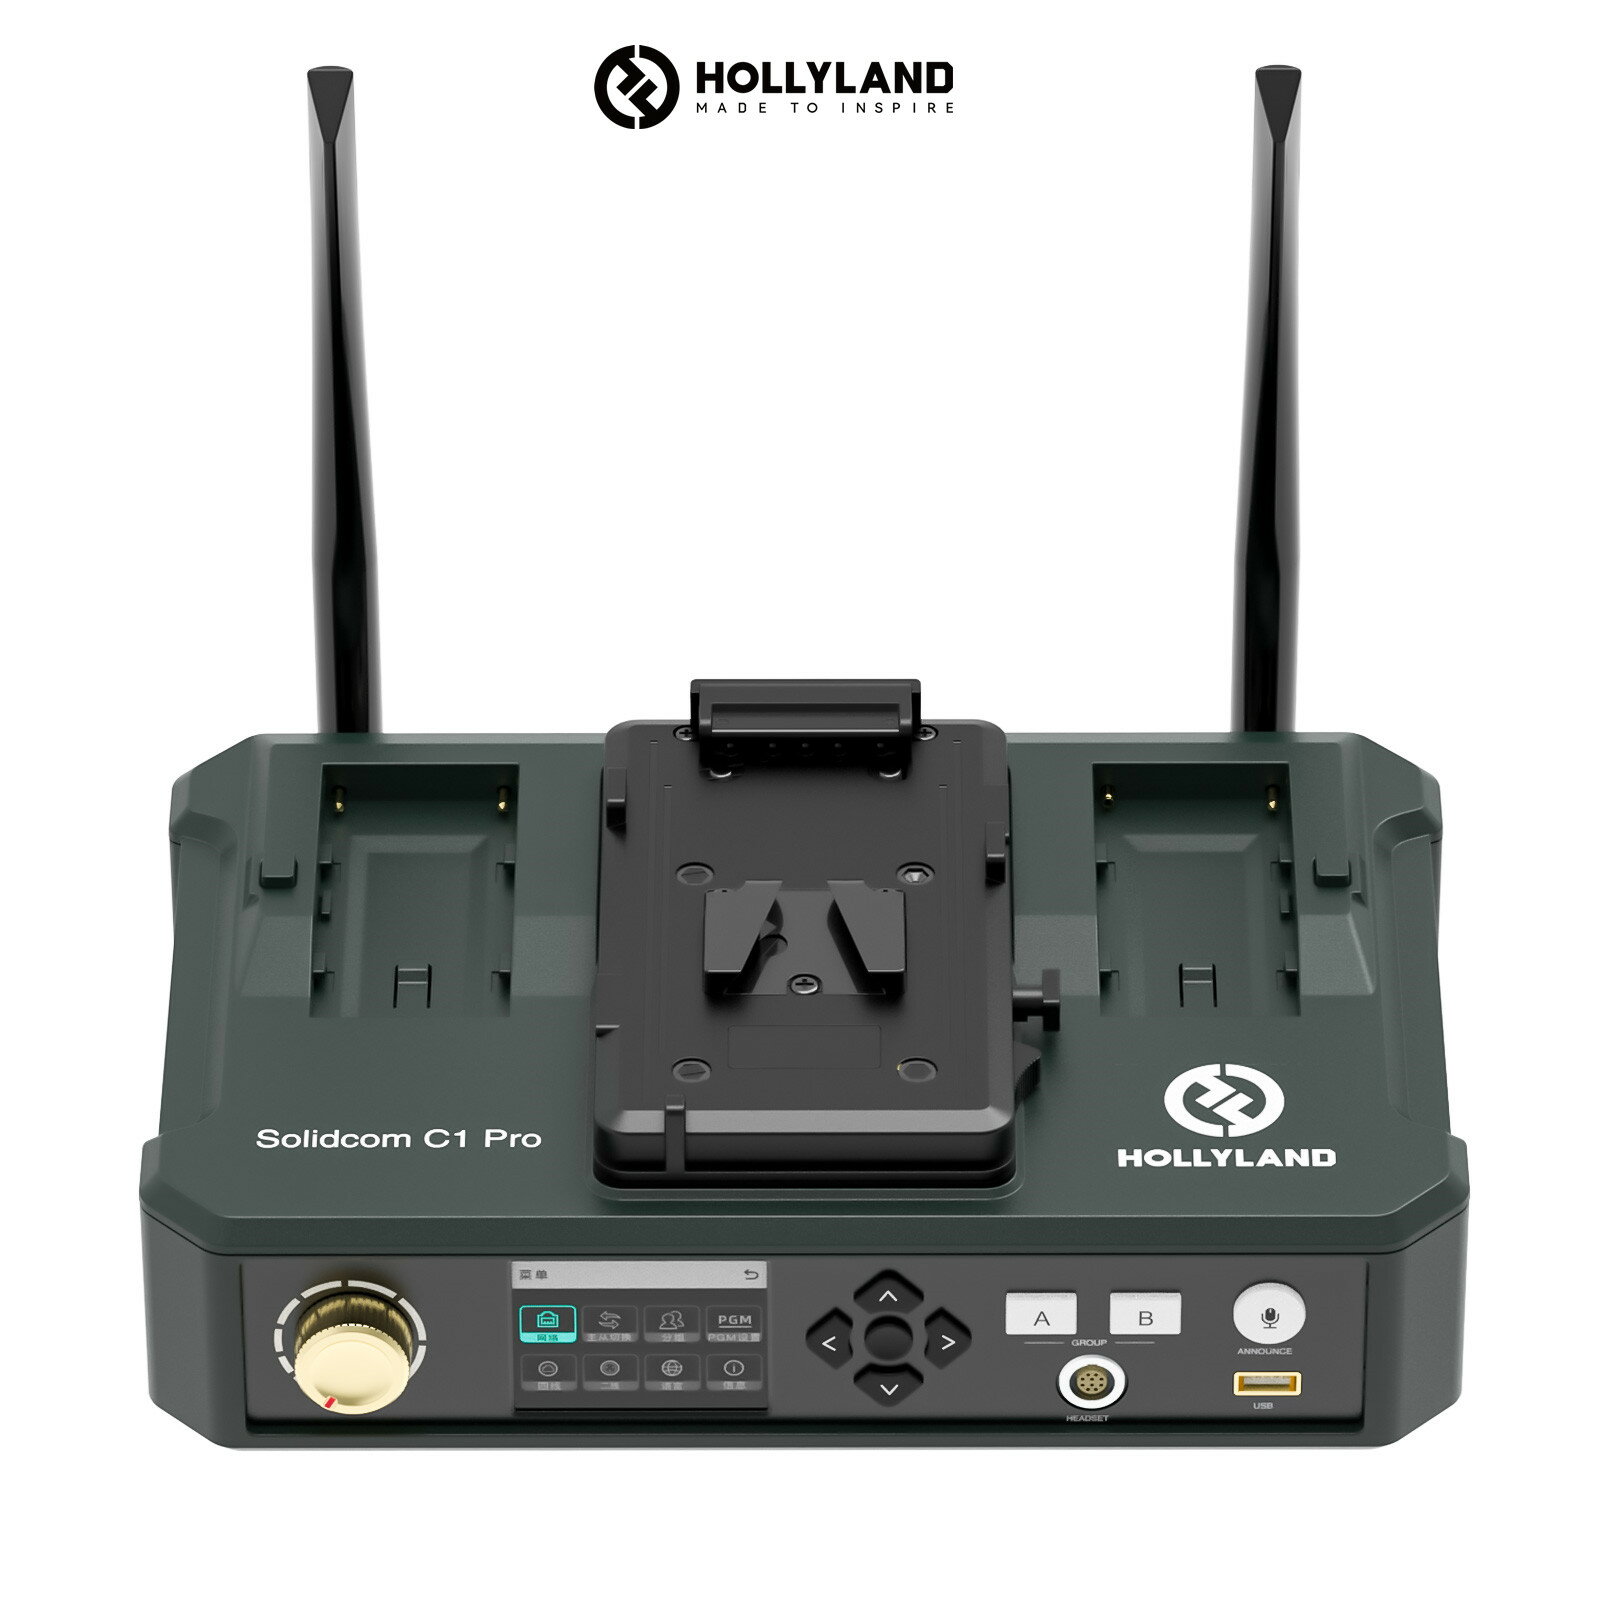 【特典付き】Hollyland Solidcom C1 Proワイヤレスインカム HUBベース 追加購入で2～27人までの人数が同時通話 Solidcom C1 Proベースステーション 多彩な通話システム構成 小型軽量ヘッドセット 設定不要 箱から出してすぐに使える同時通話システム